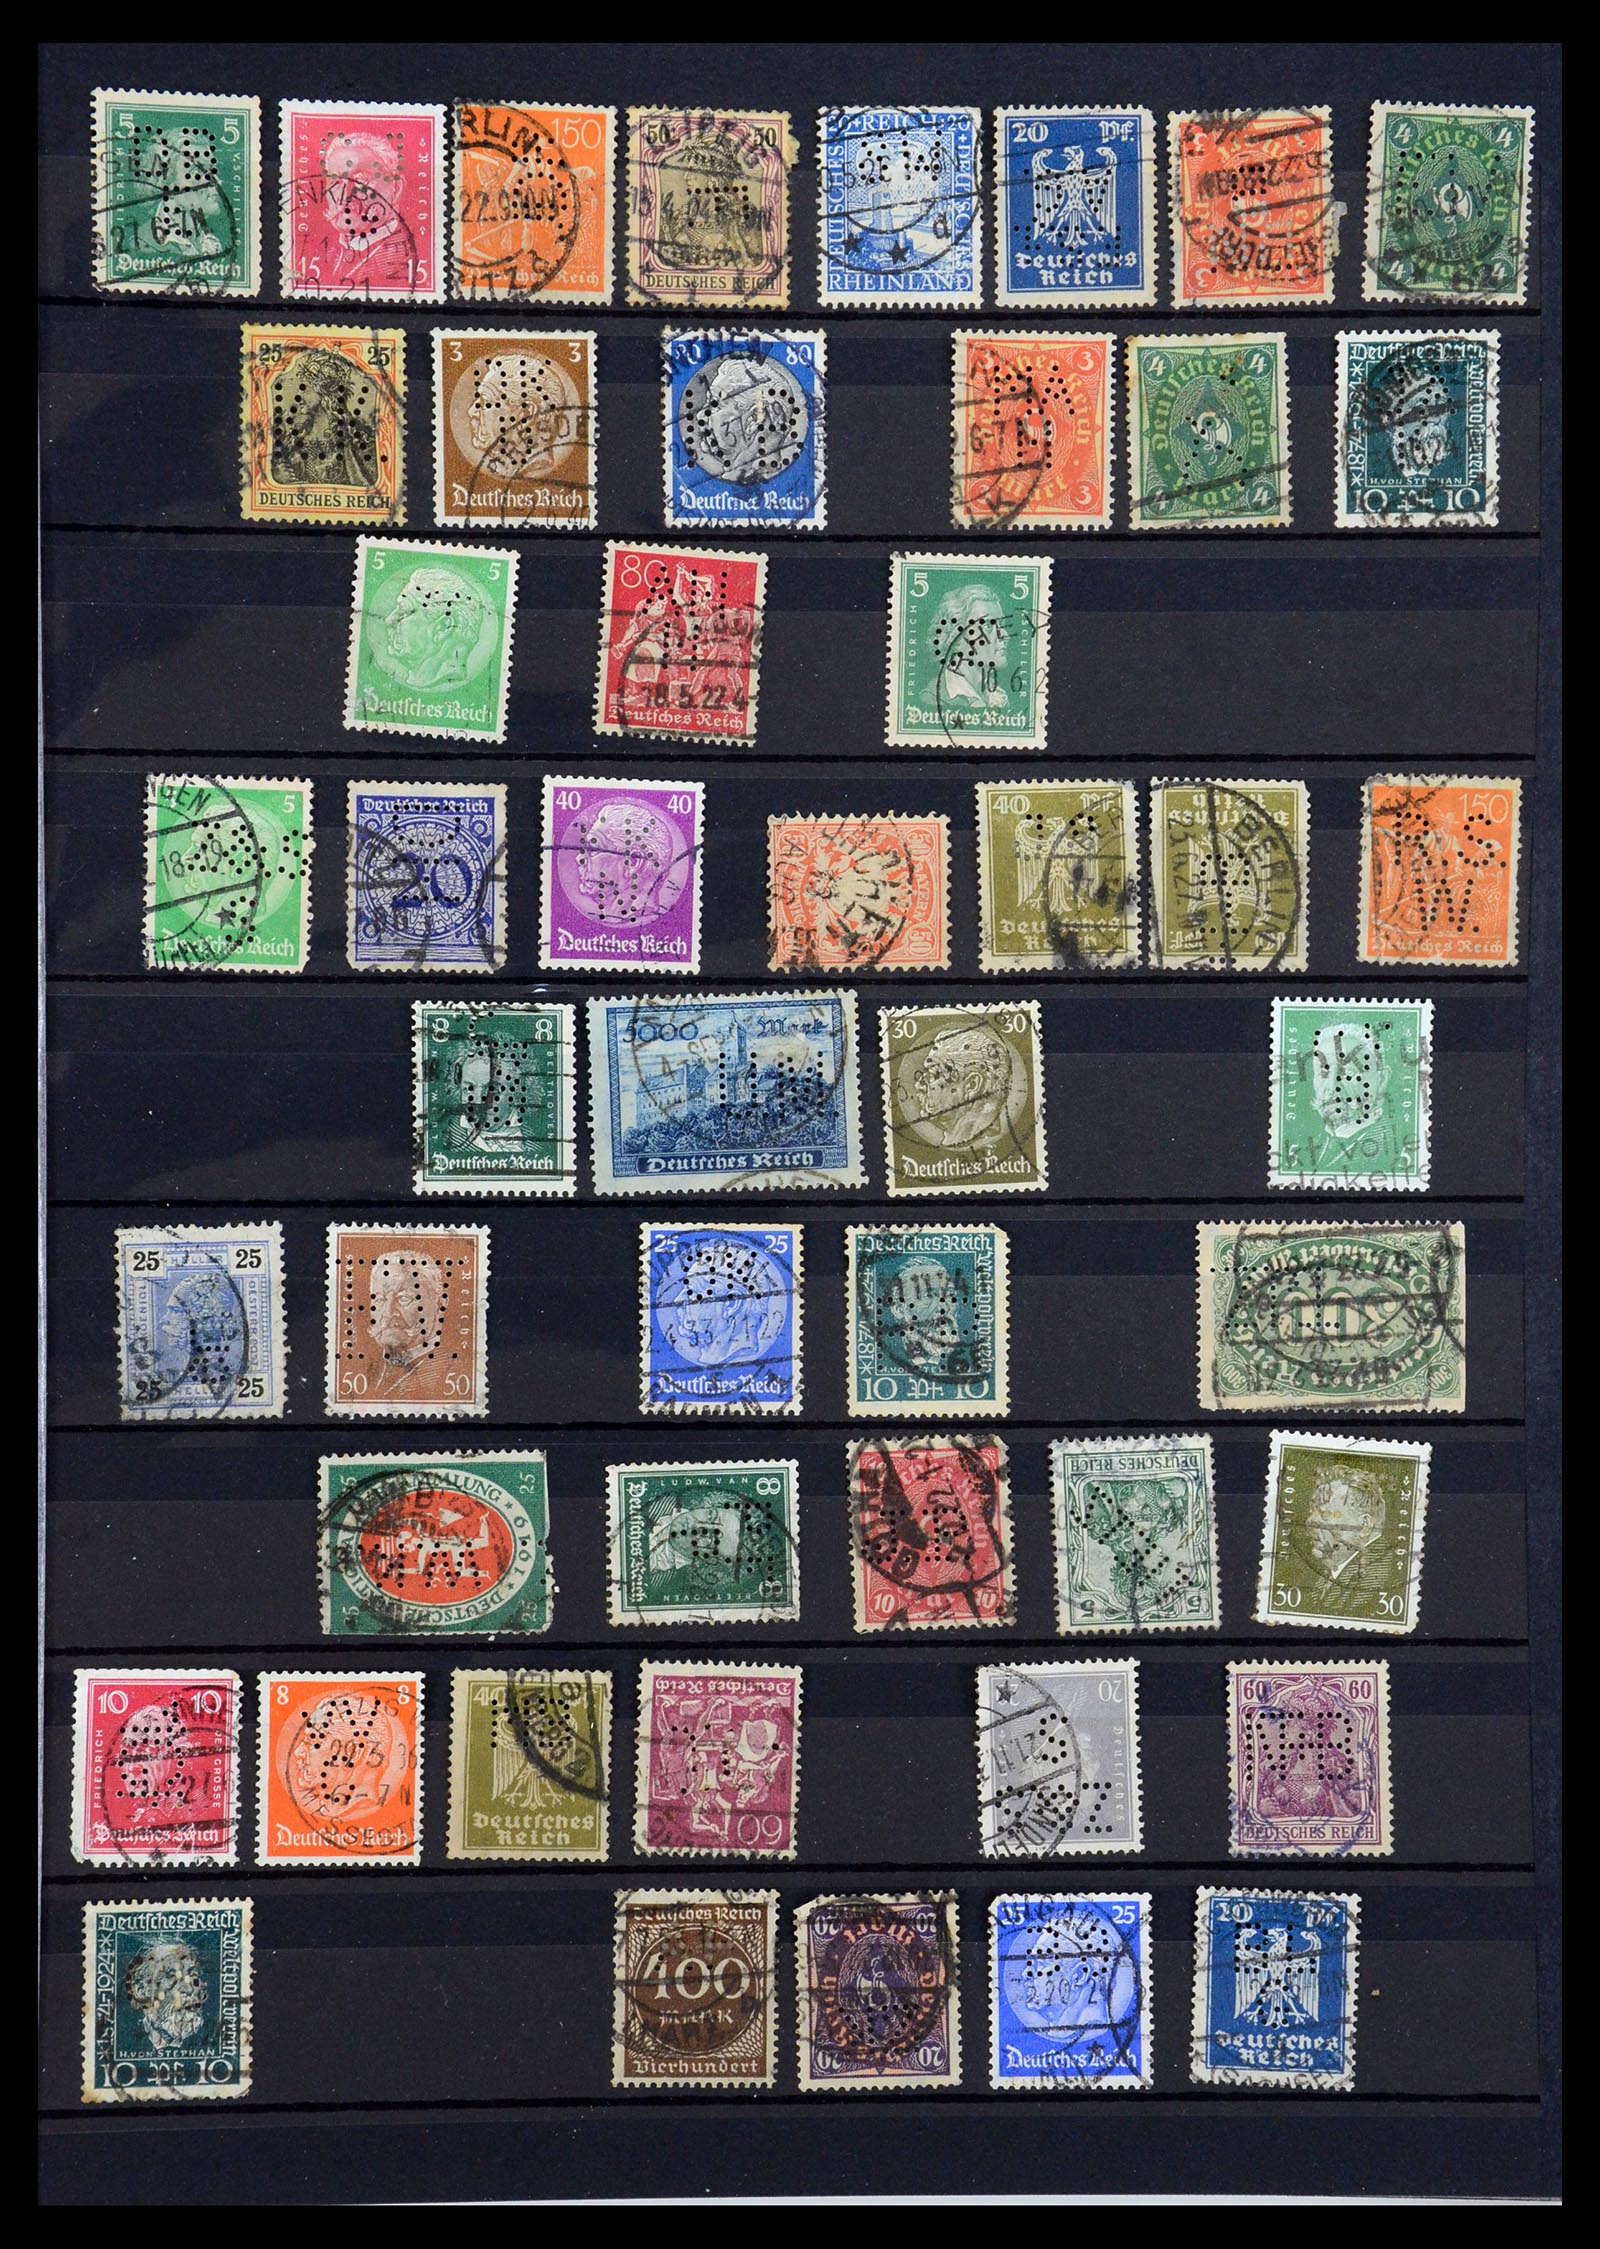 35183 001 - Stamp Collection 35183 German Reich perfins 1880-1945.